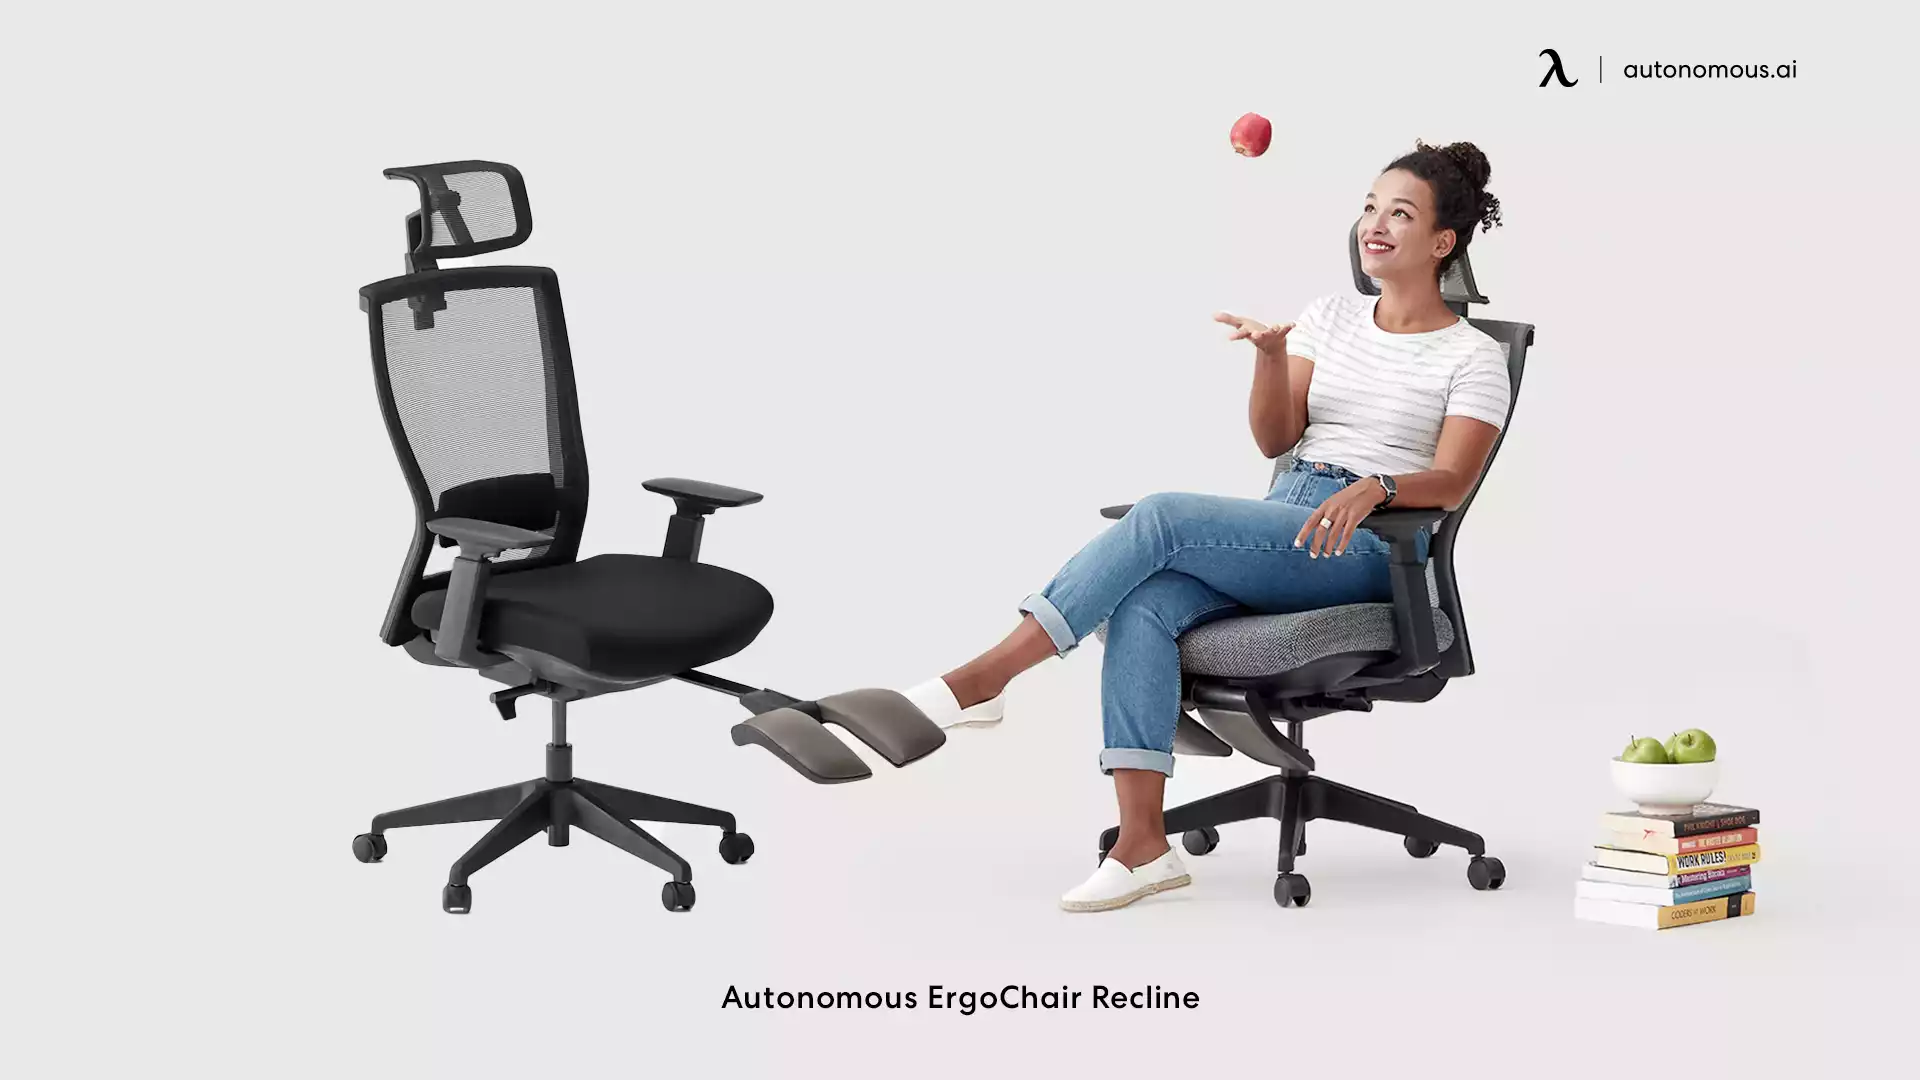 ErgoChair Recline high back office chair with lumbar support